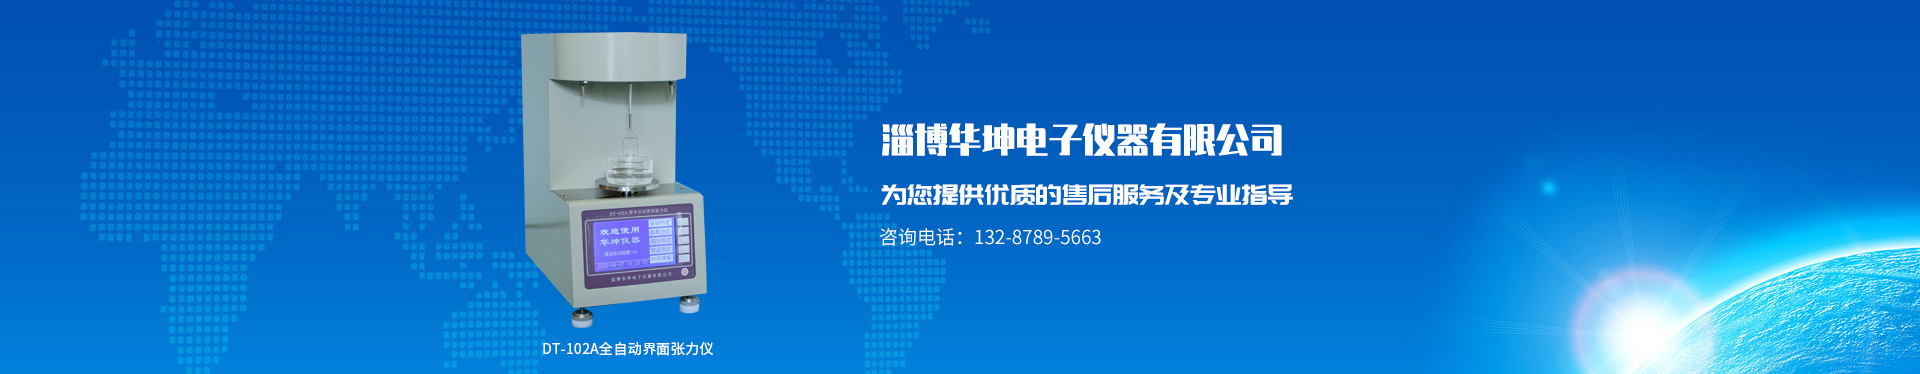 淄博華坤電子儀器有限公司